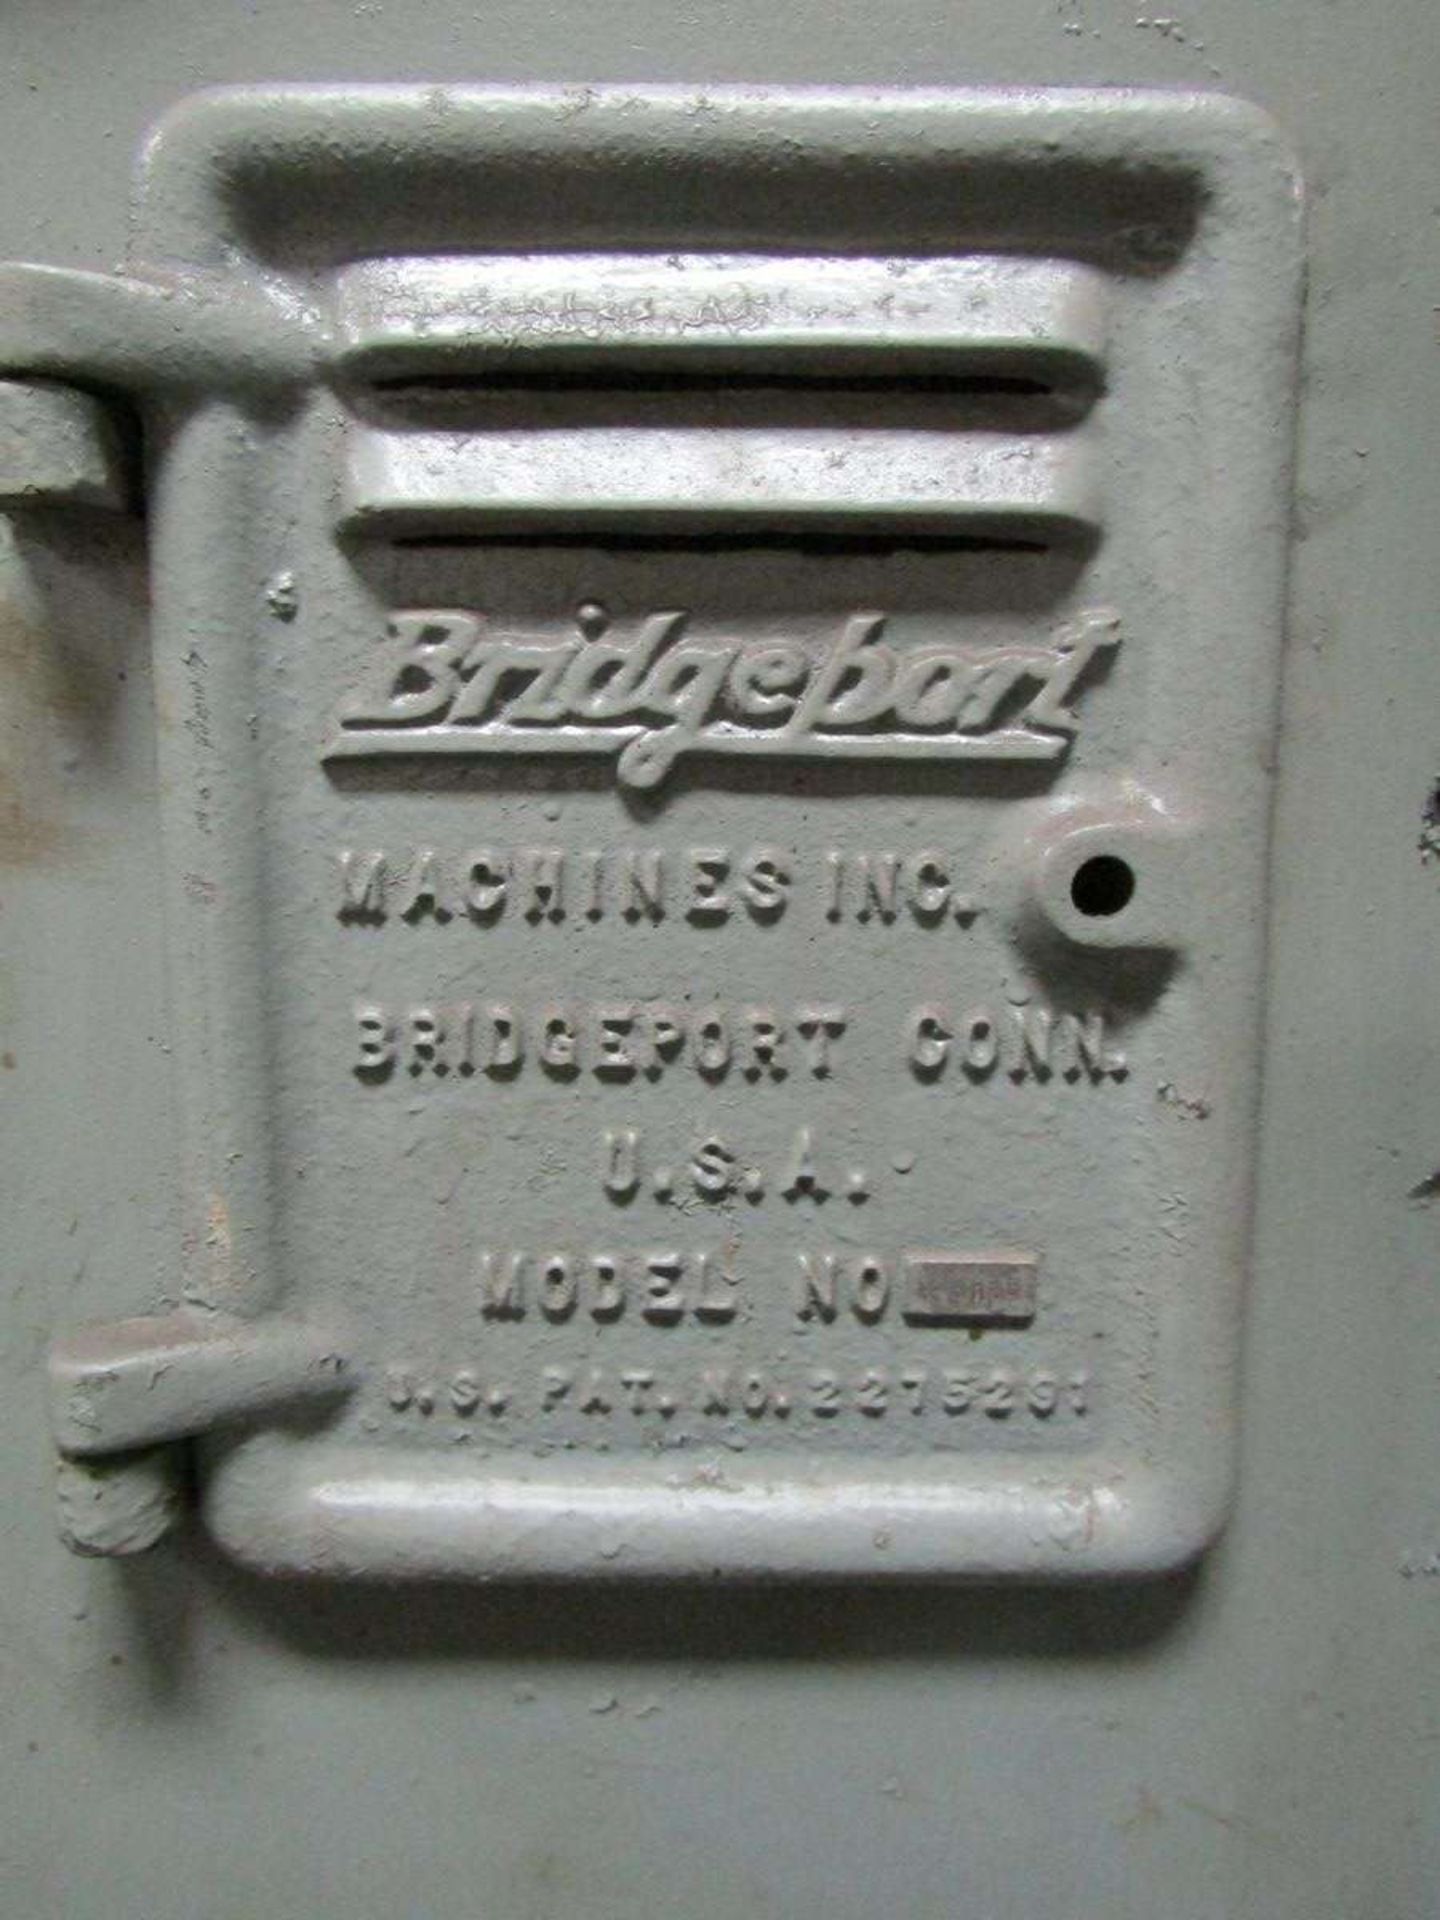 Bridgeport 23163 Vertical Milling Machine - Image 9 of 9